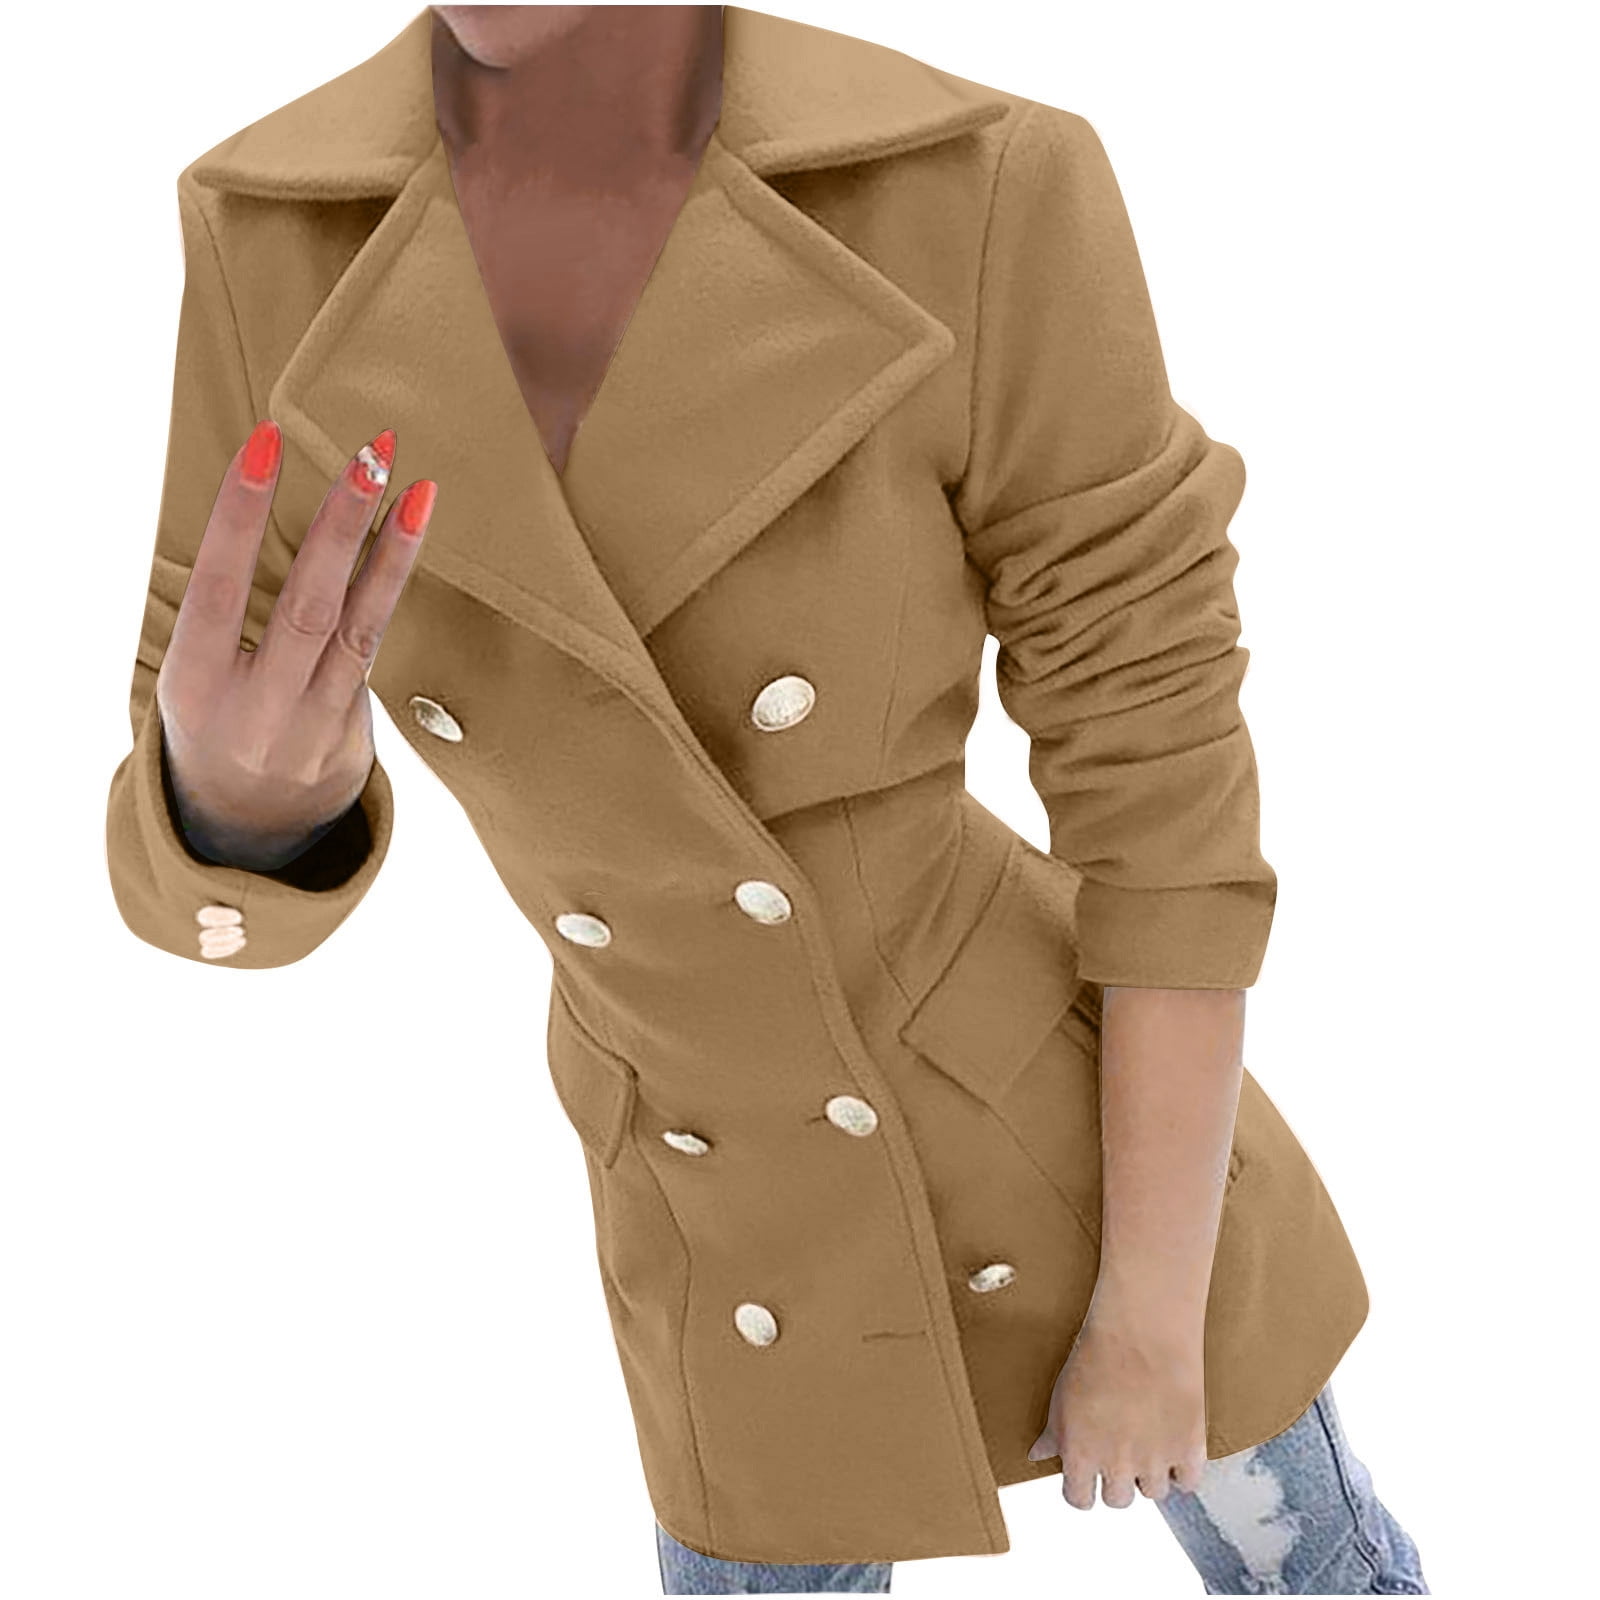 Jacket Overcoat Long Sleeve Women's Winter Trench Ladies Blazer Woolen Coat 